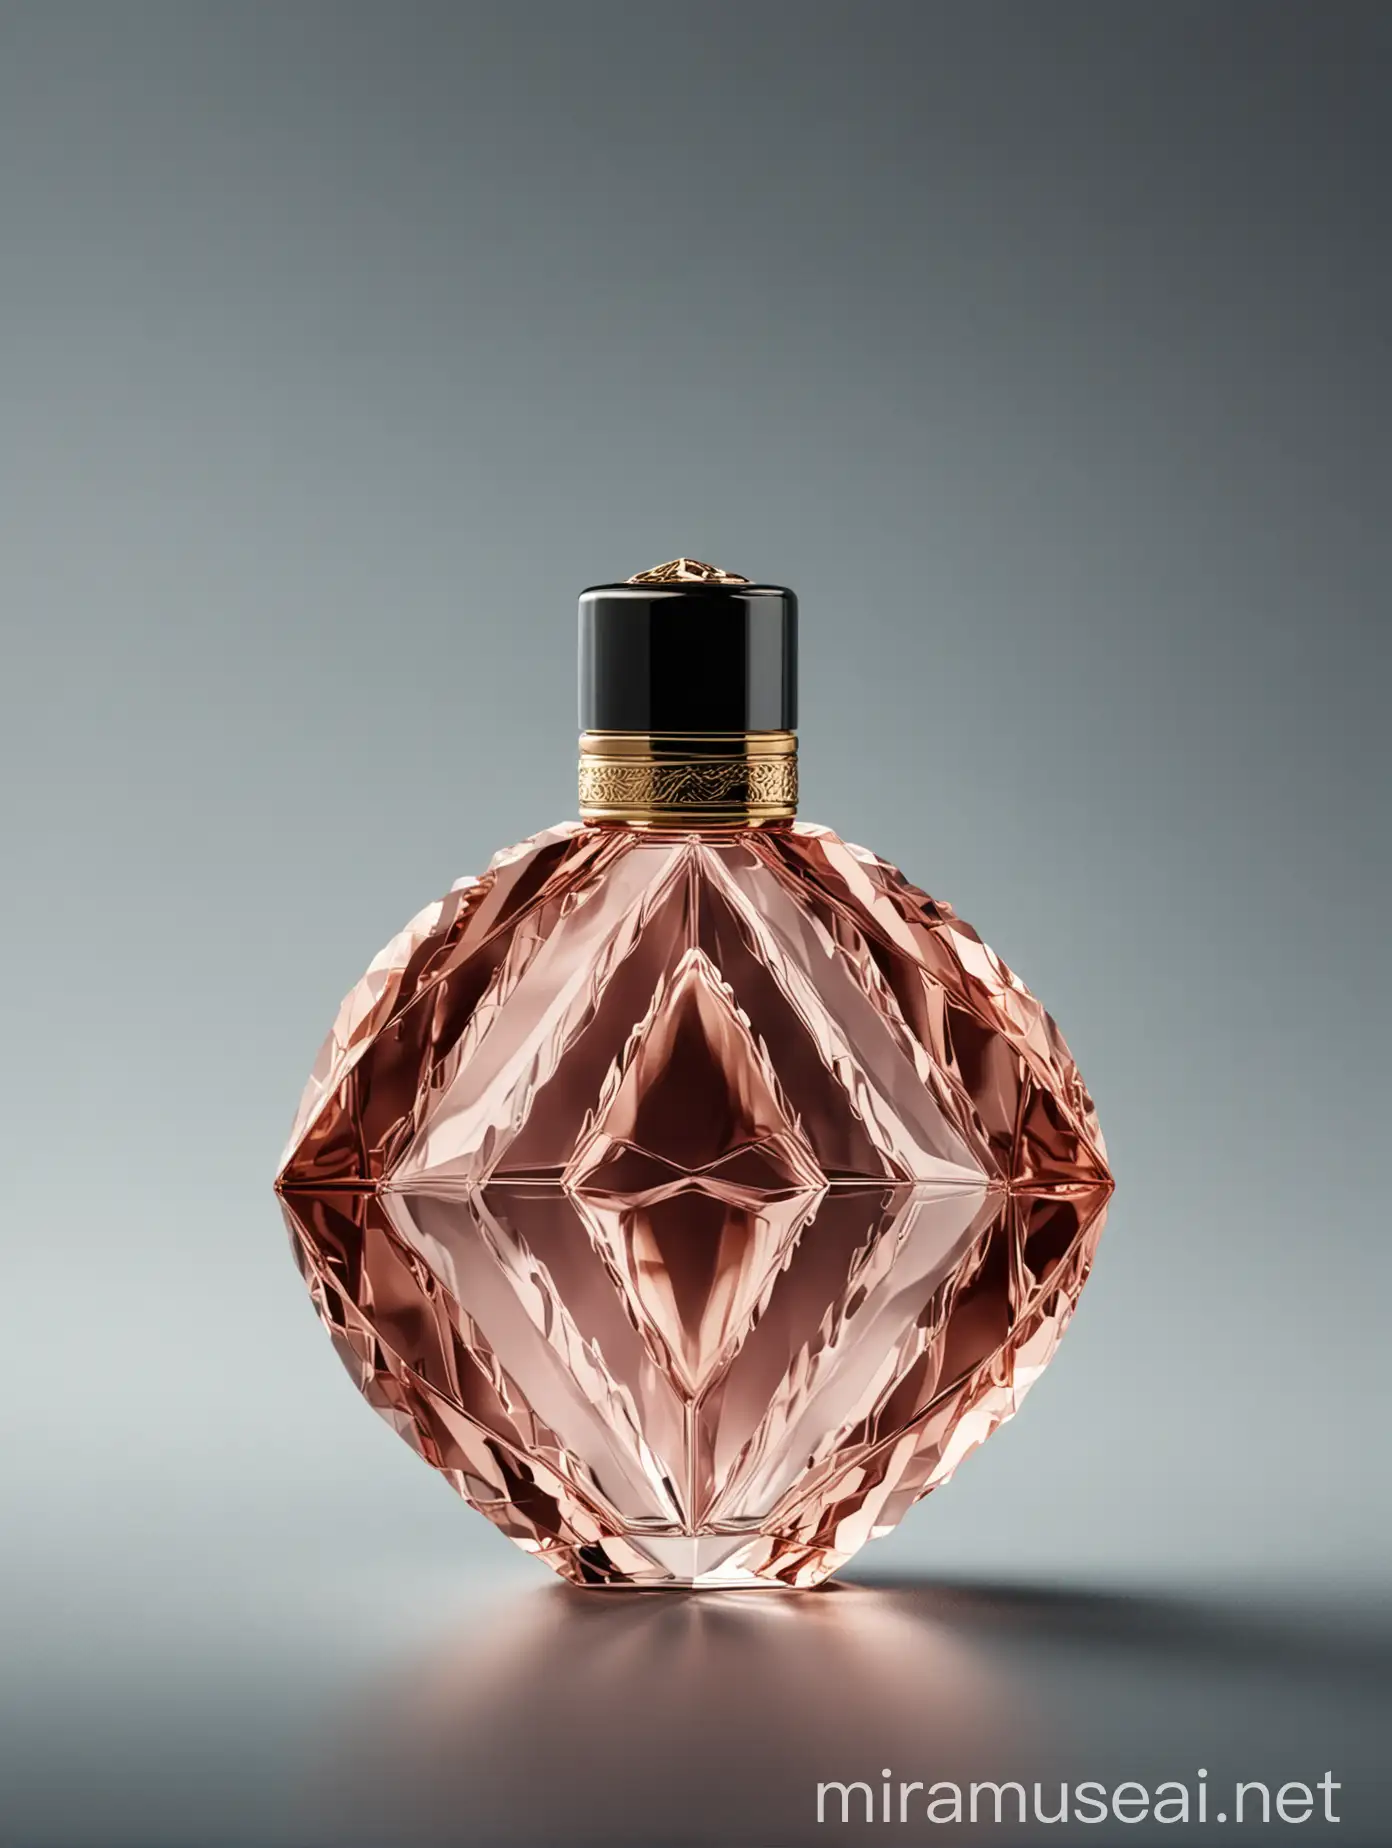 Elegant Symmetrical Perfume Bottle Isolated on White Background